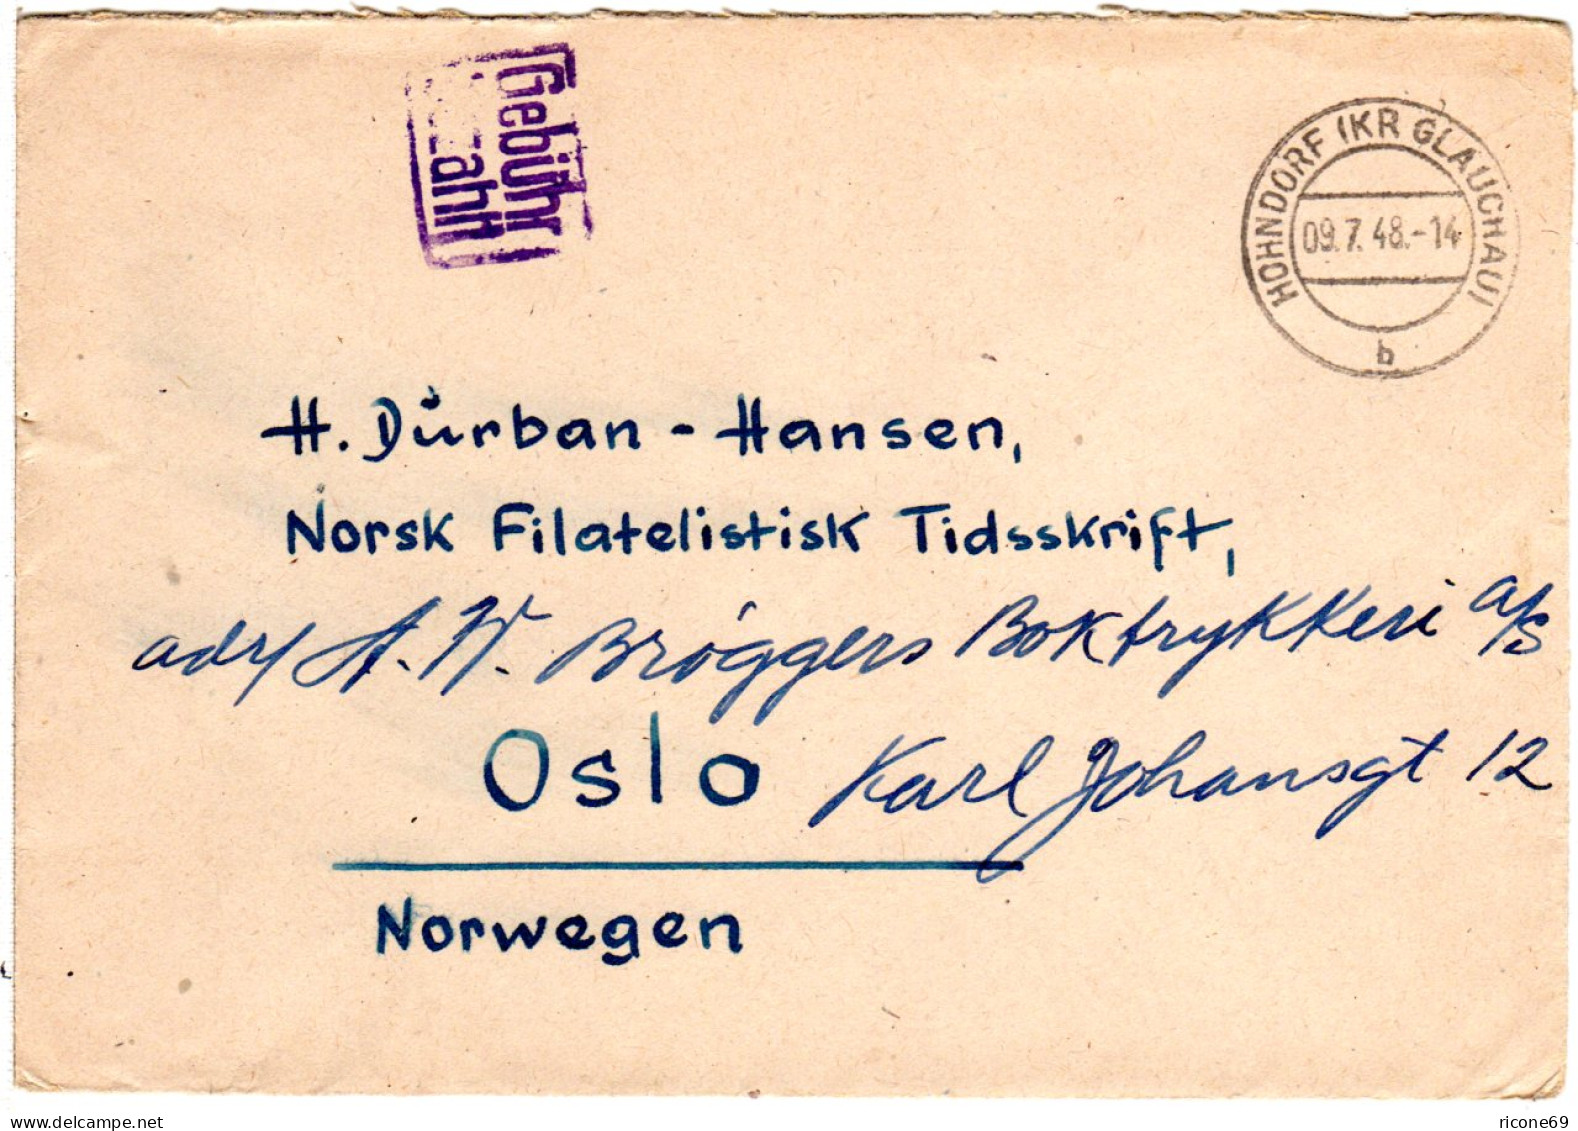 1948, Blauer R2 Gebühr Bezahlt Auf Brief V. HOHNDORF (SBZ) N. Norwegen - Covers & Documents